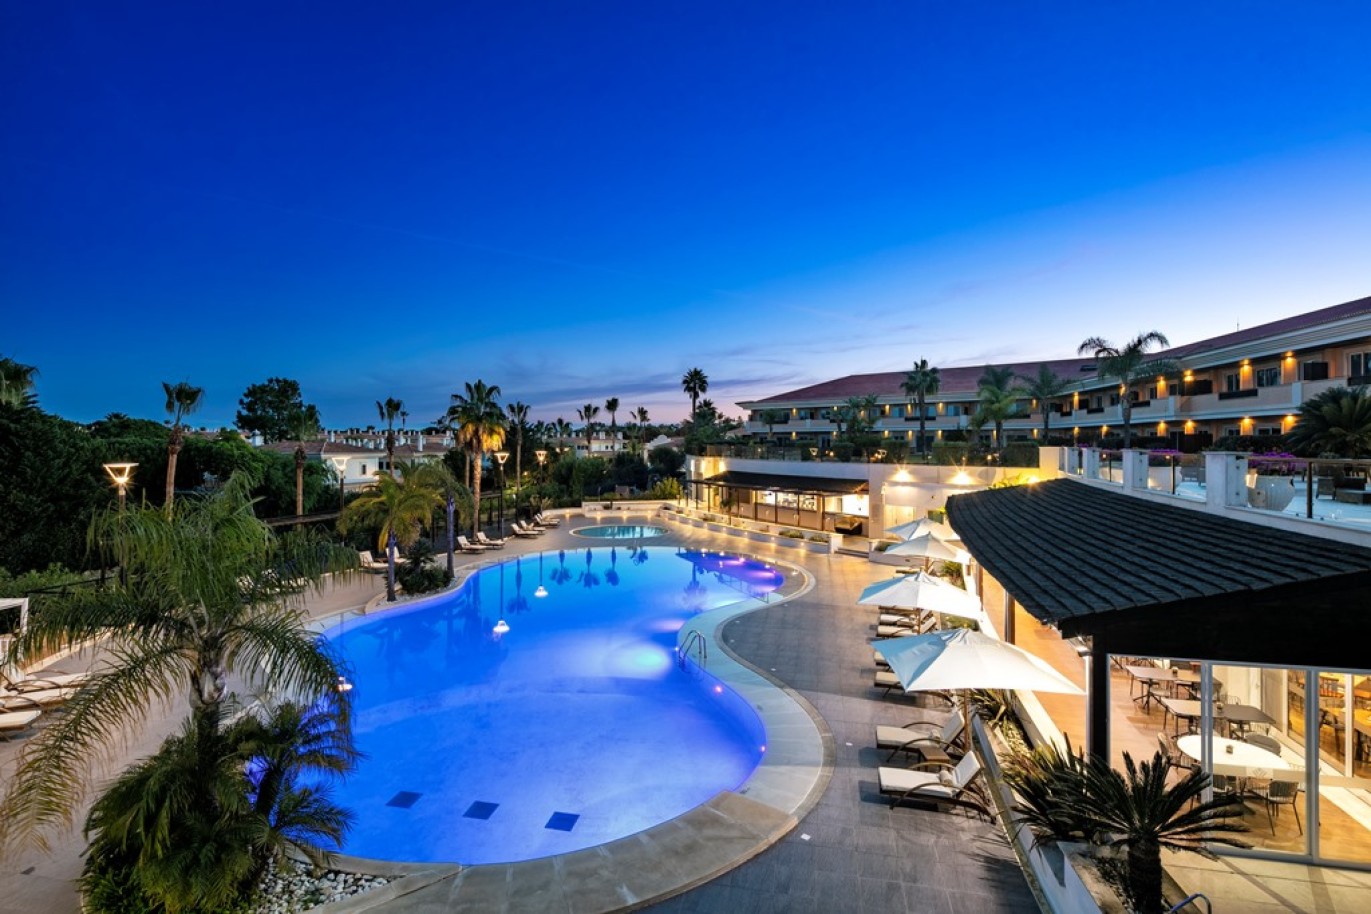 Apartamento, 2 quartos, piscina, para venda na Quinta do Lago, Algarve_262224